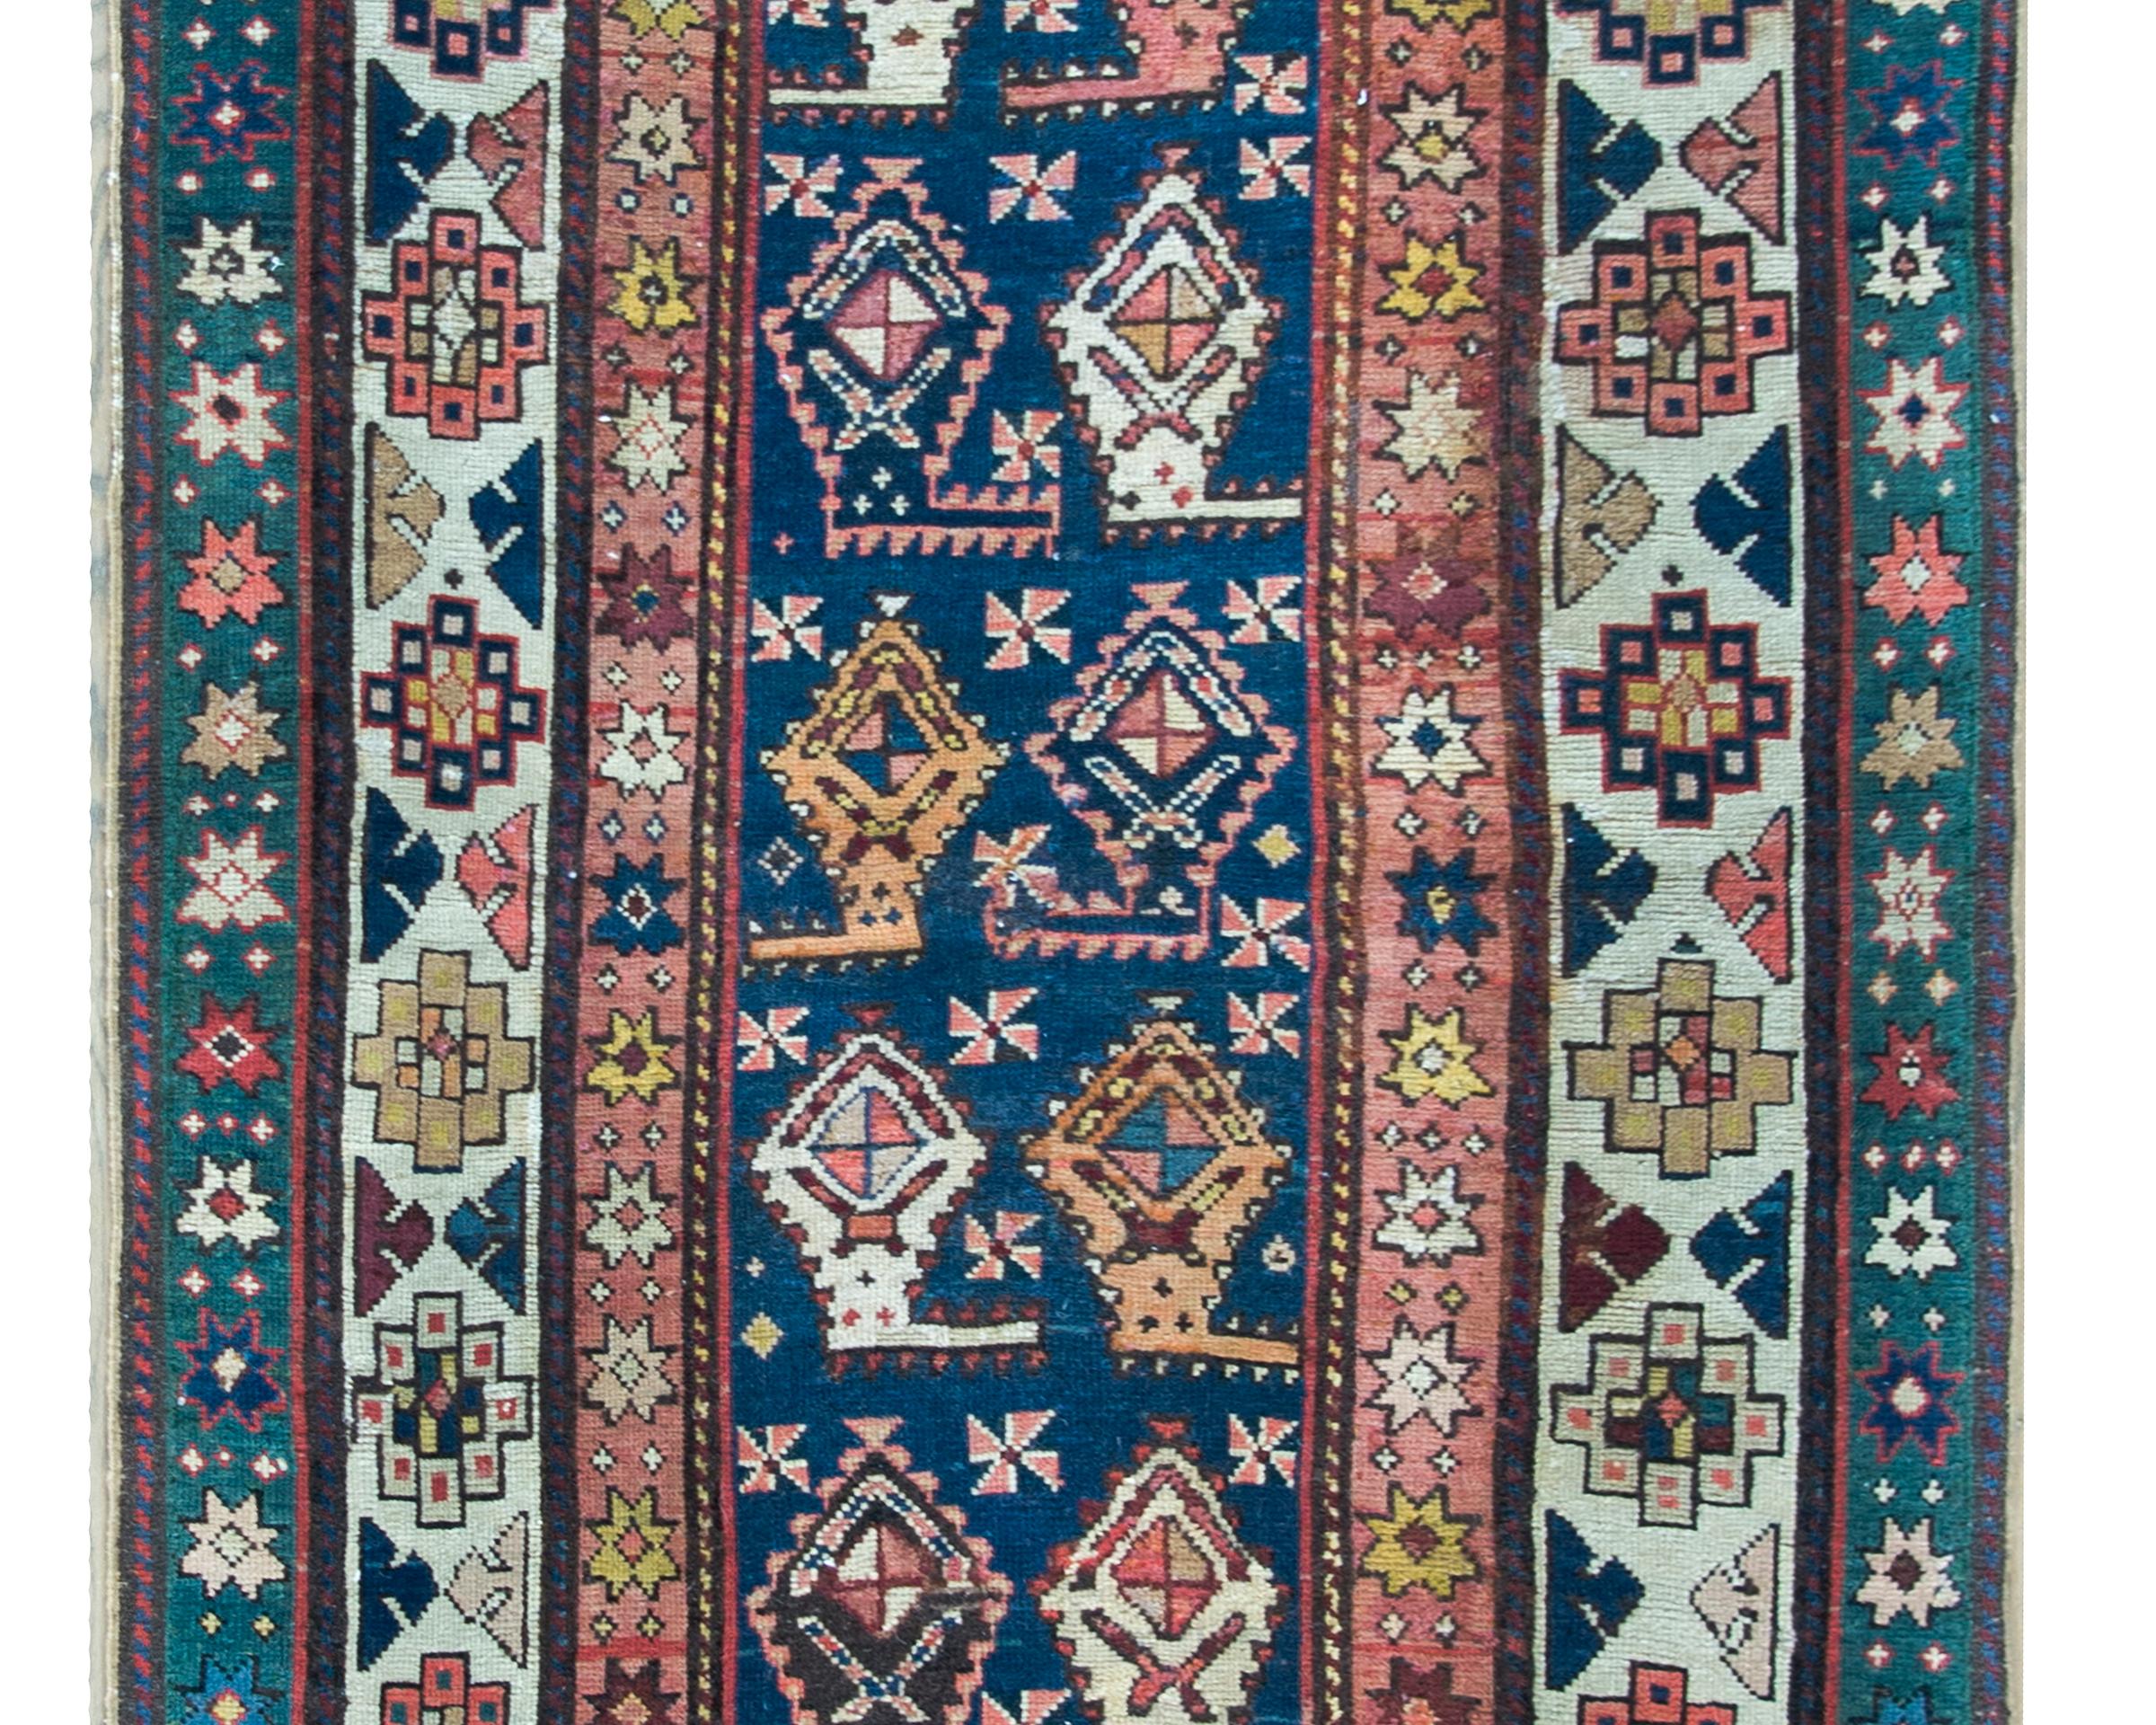 Remarquable chemin de table azerbaïdjanais de la fin du XIXe siècle, présentant un motif cachemire stylisé répété, tissé dans des tons roses, cramoisis, blancs, dorés et indigos sur un fond indigo foncé, le tout entouré de trois bandes distinctes à